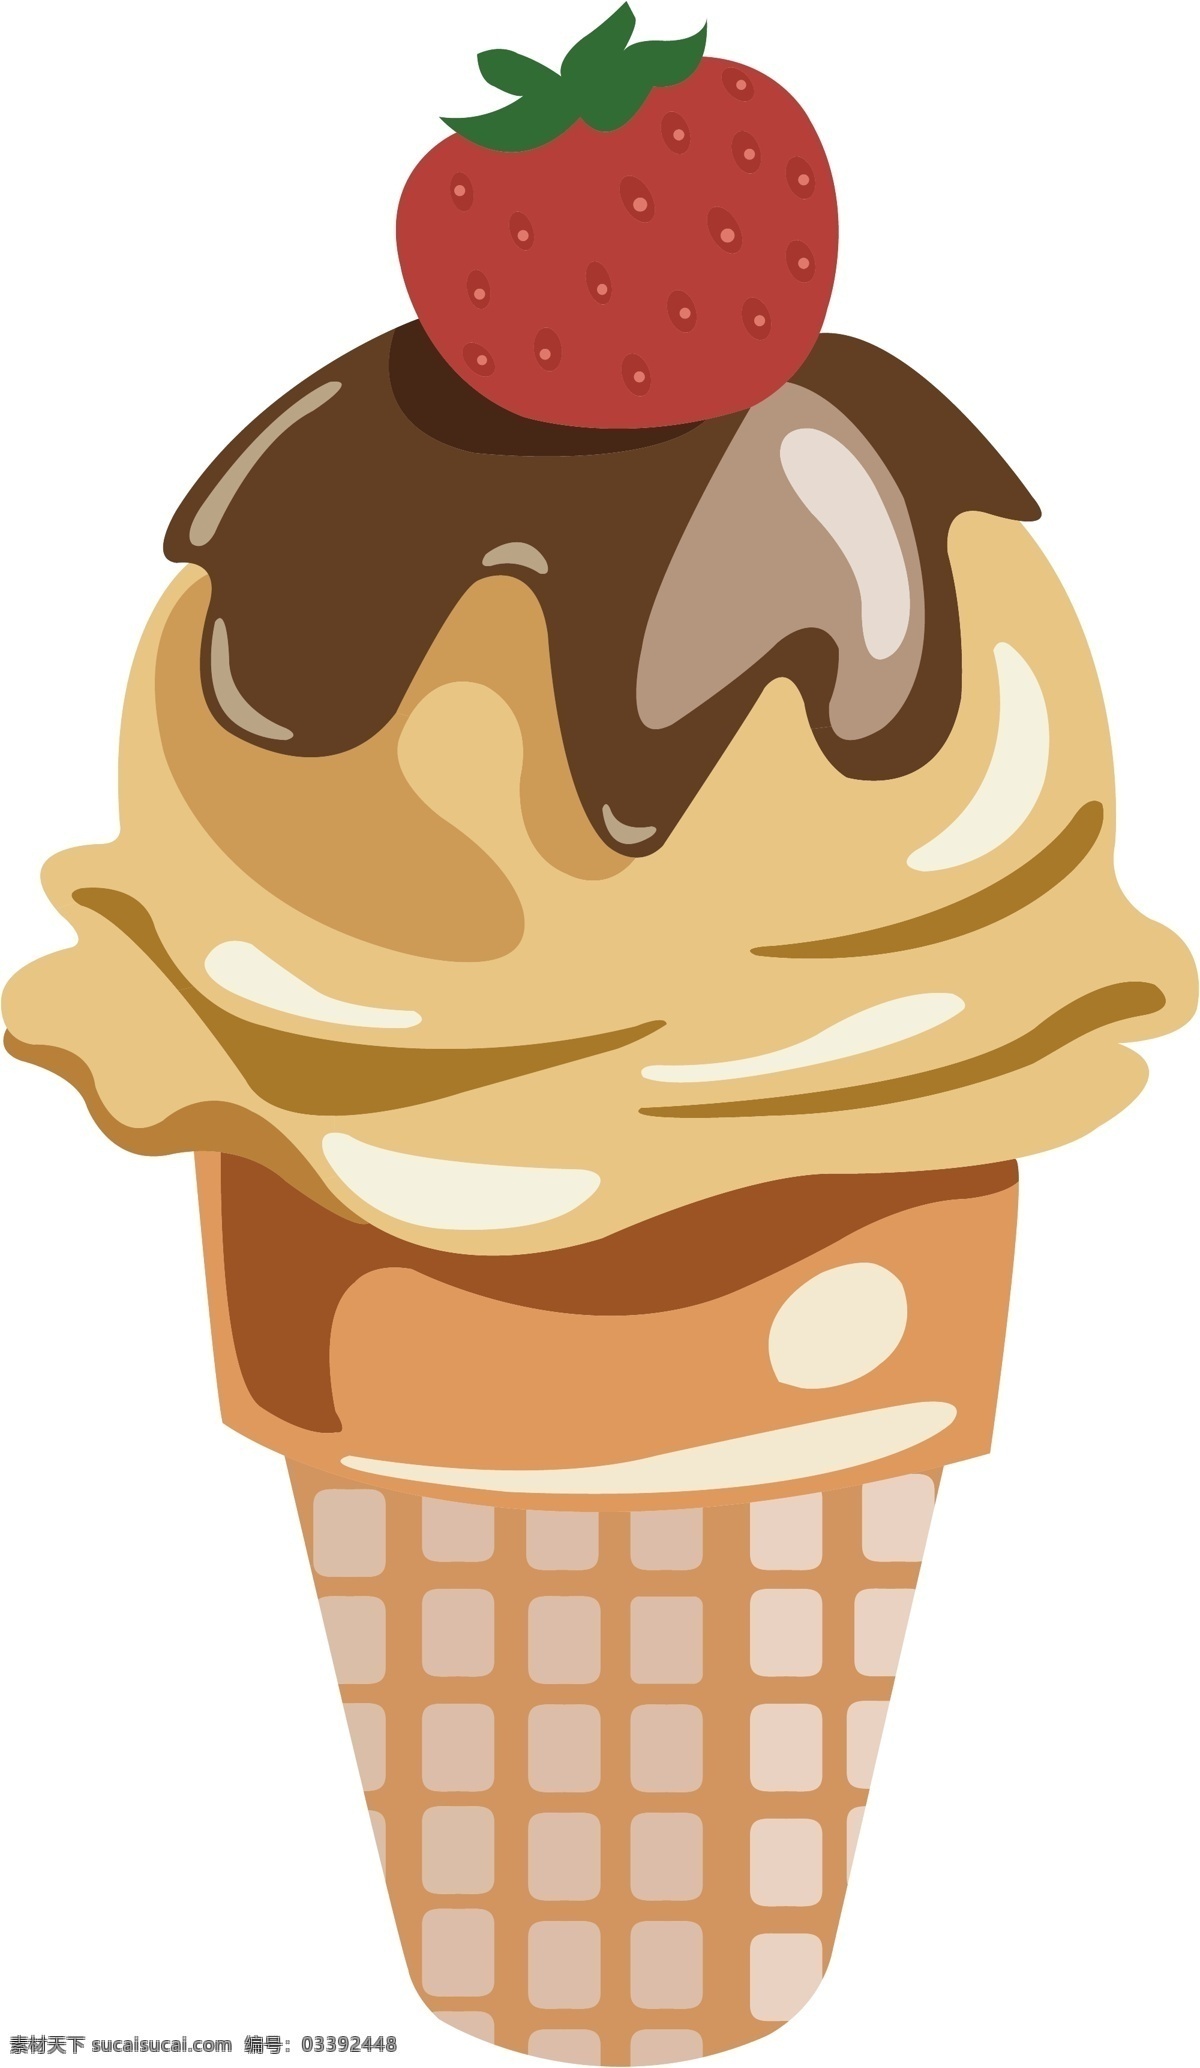 简约 可爱 冰淇淋 甜品 图形 元素 清新 美食 食物 水果 色彩丰富 夏日 大暑